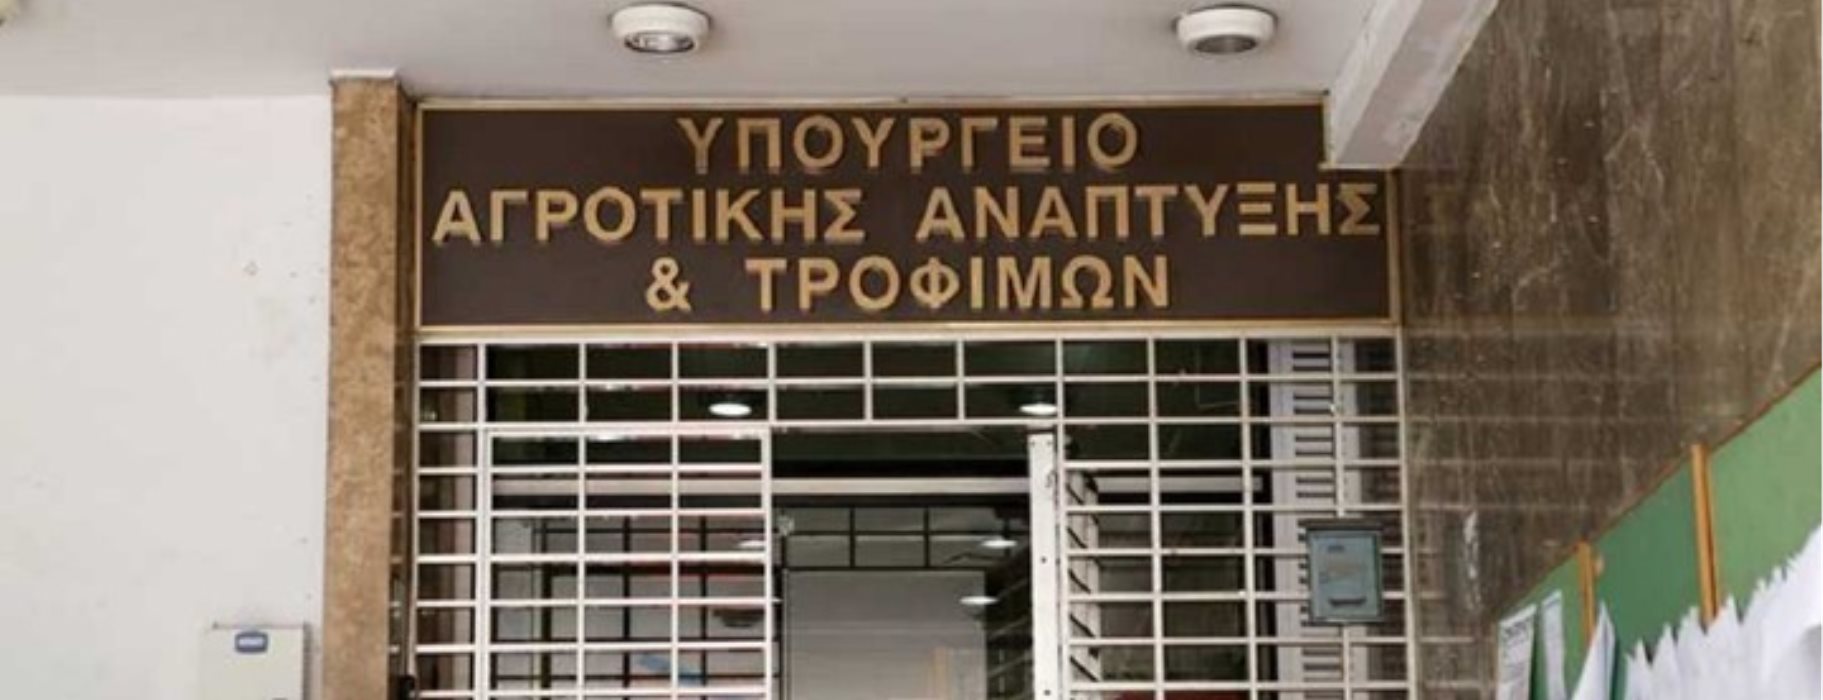 Υπουργείο Αγροτικής Ανάπτυξης για ΑΟΖ: «Κατοχυρώνει τα συμφέροντα των Ελλήνων αλιέων στο Ιόνιο»